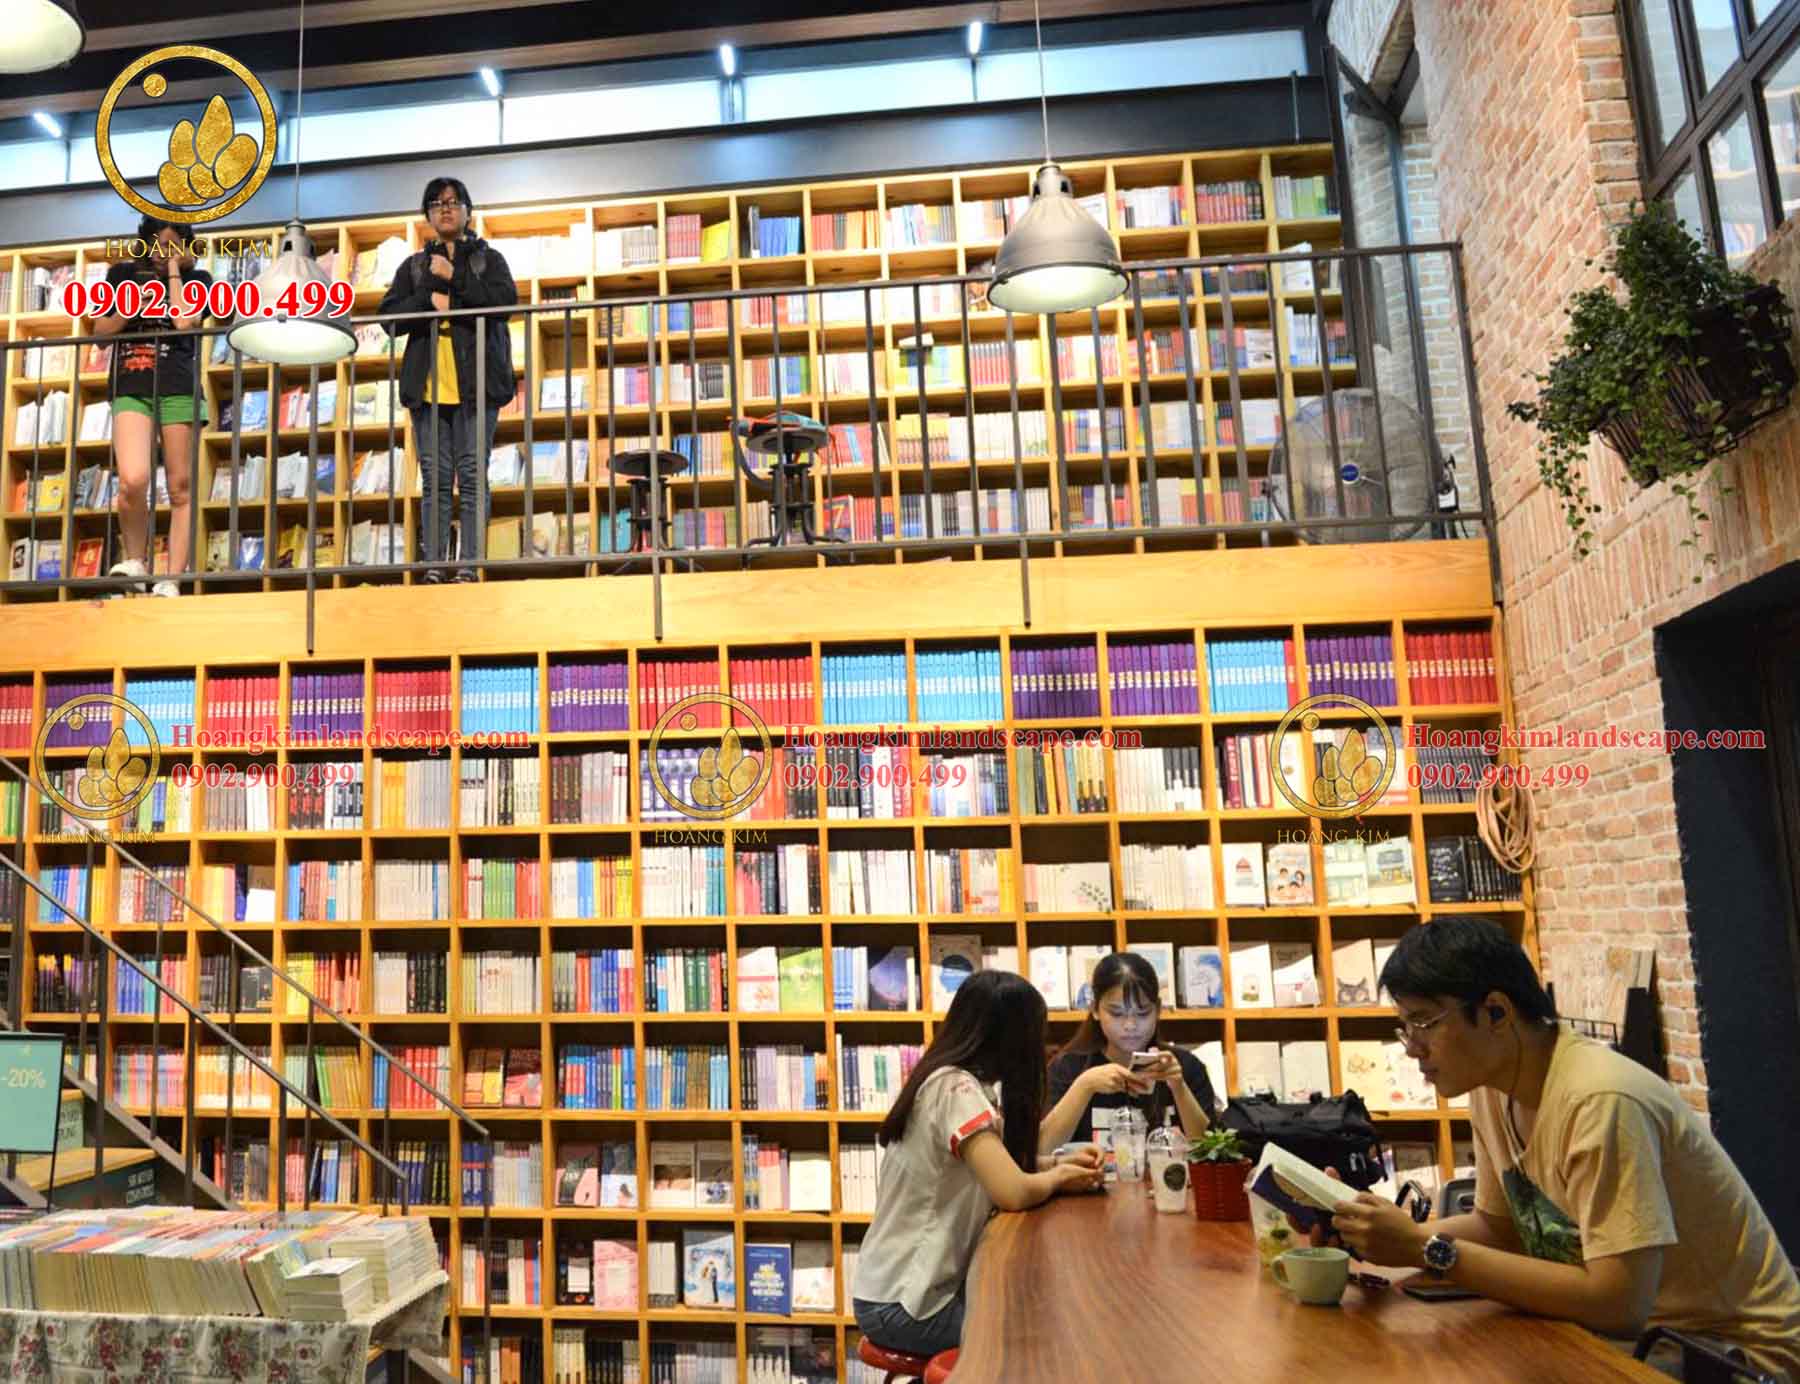 Thiết kế quán cà phê sách thích hợp cho những bạn trẻ yêu sách